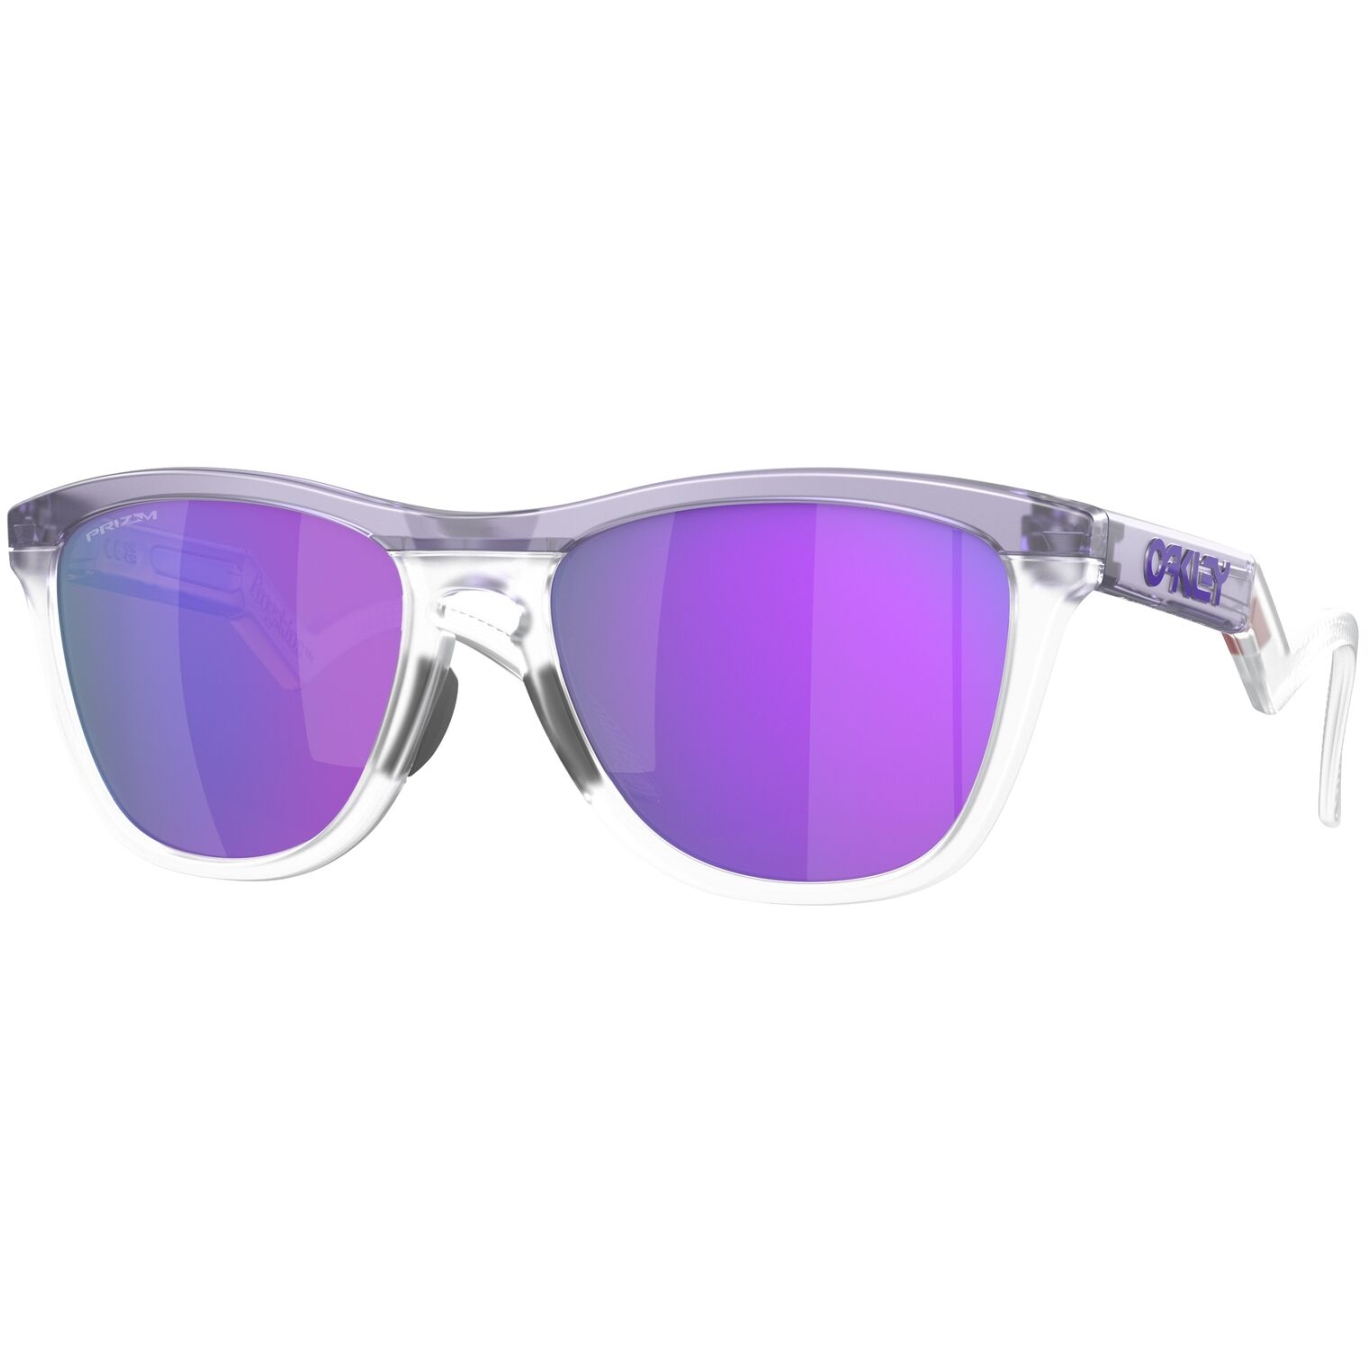 Produktbild von Oakley Frogskins Hybrid Brille - Matte Trans Lilac/Clear/Prizm Violet - OO9289-928901